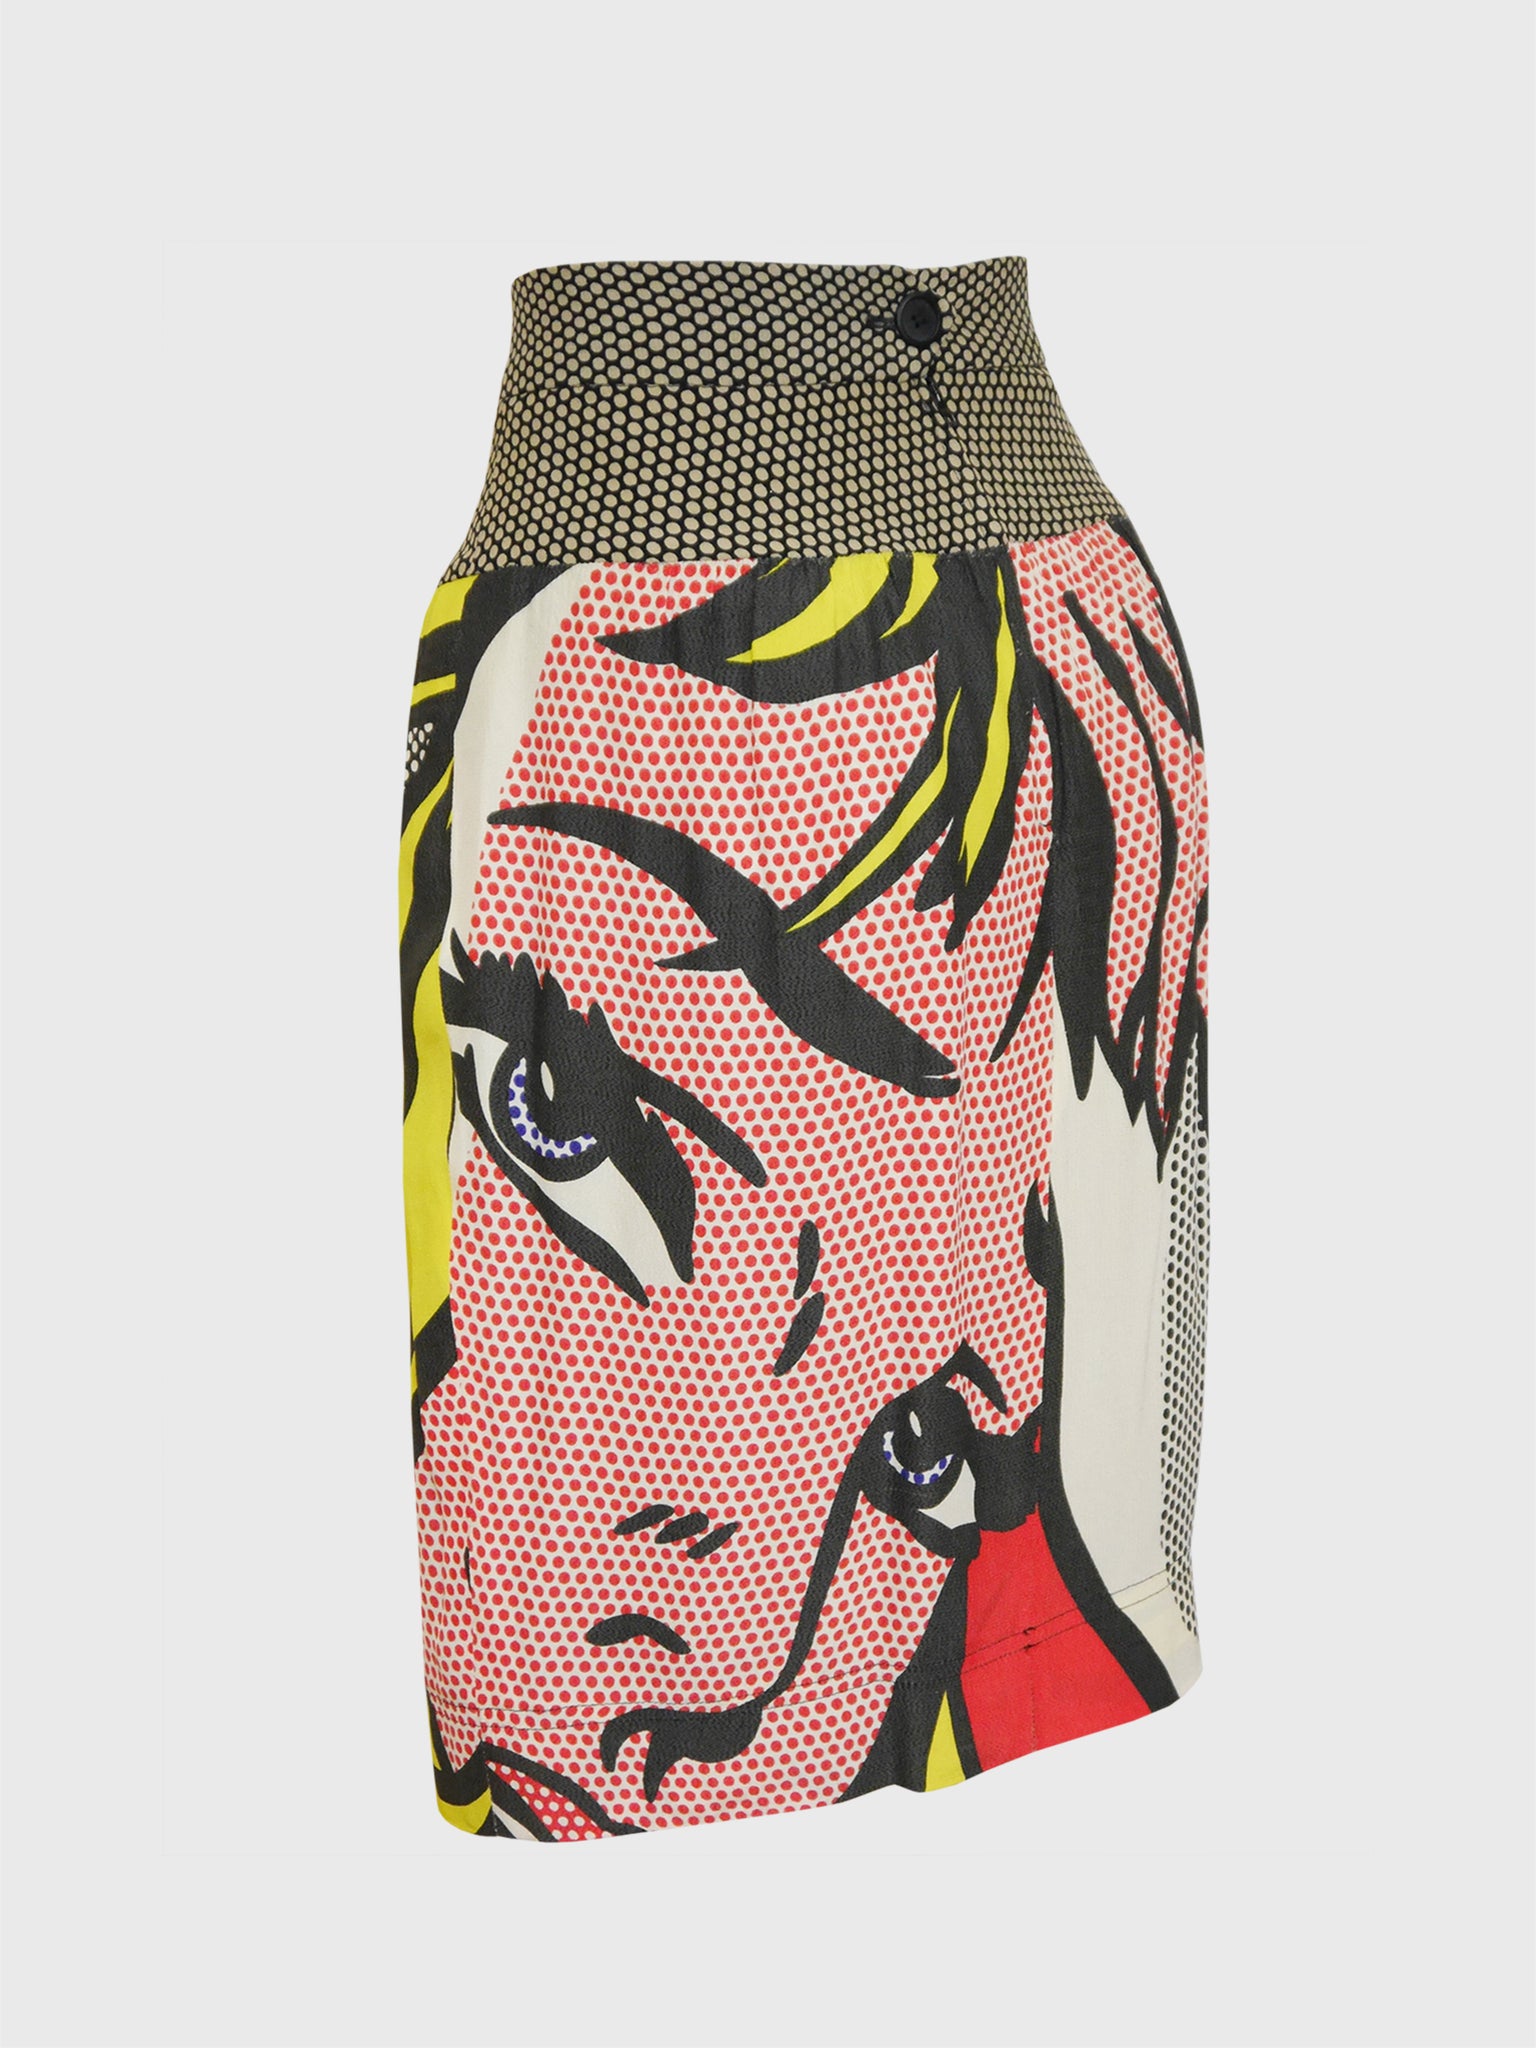 MOSCHINO Vintage Roy Lichtenstein "Girl with Hair Ribbon" Pop Art Print Skirt